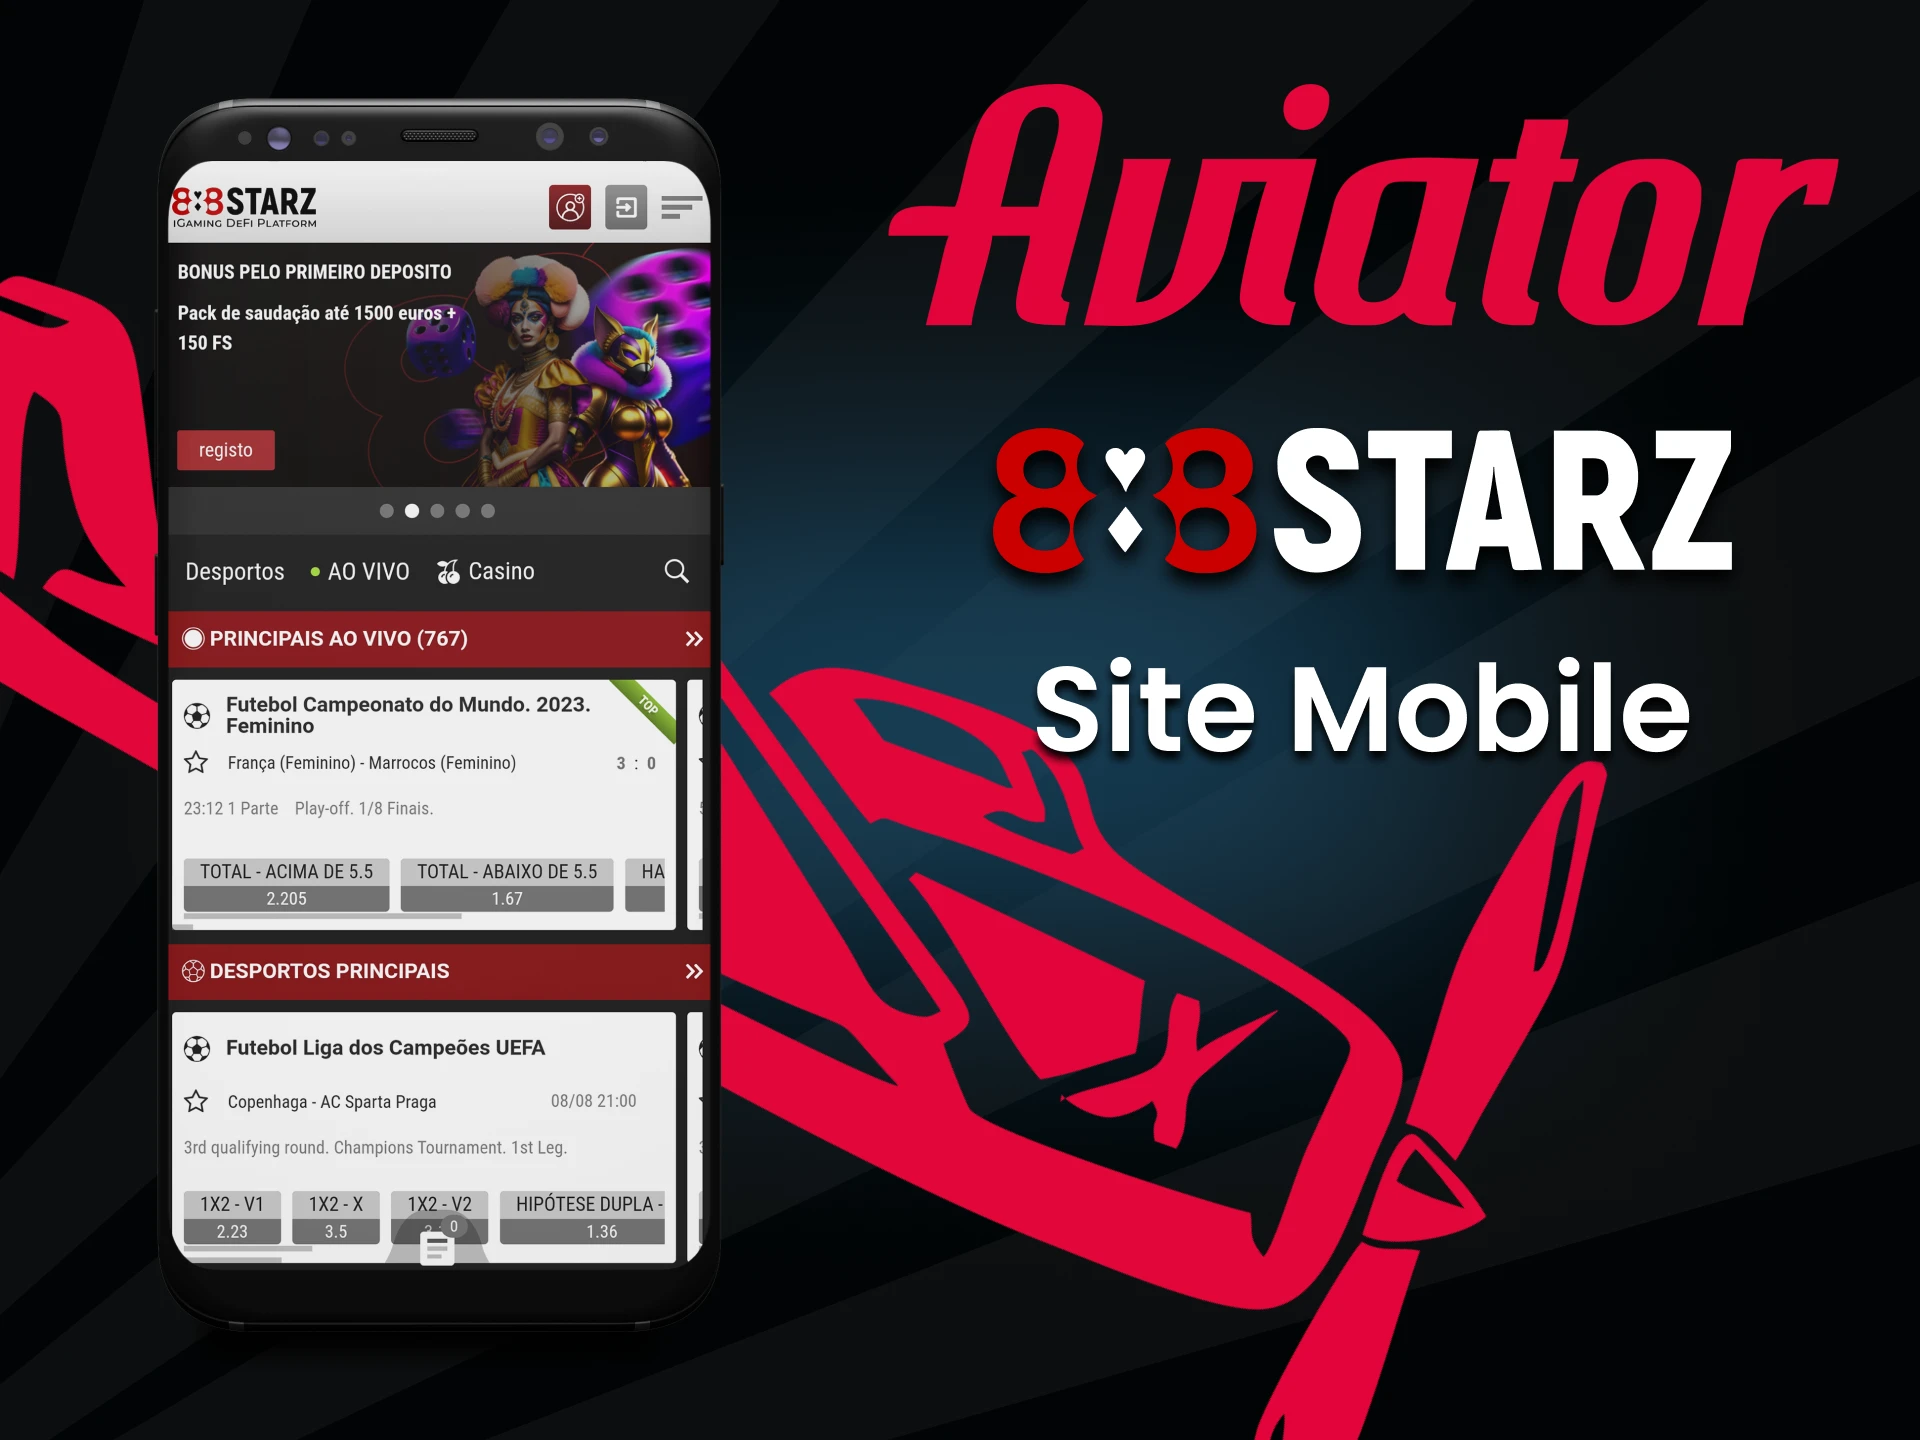 Visite a versão móvel do site da 888starz em seu smartphone.